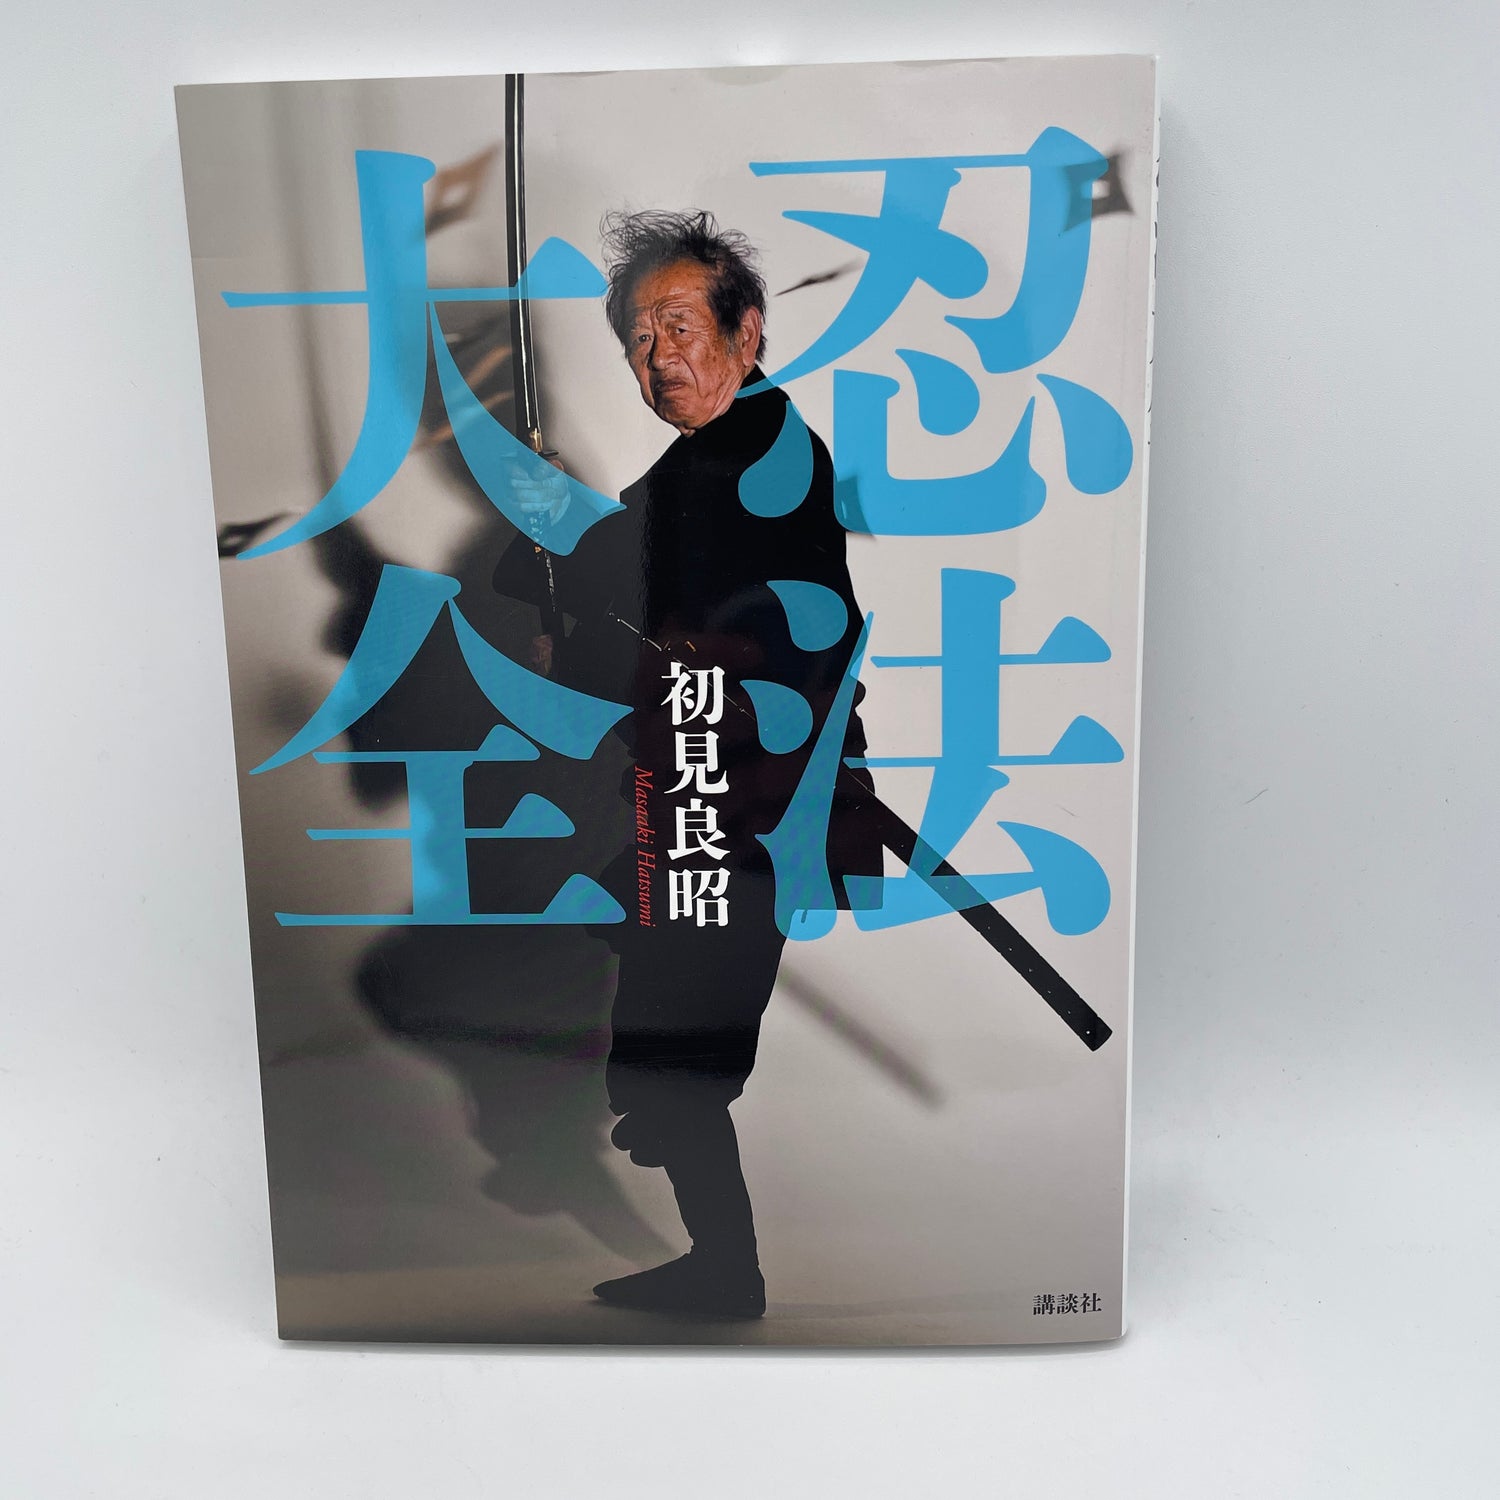 Ninja Encyclopedia Book by Masaaki Hatsumi